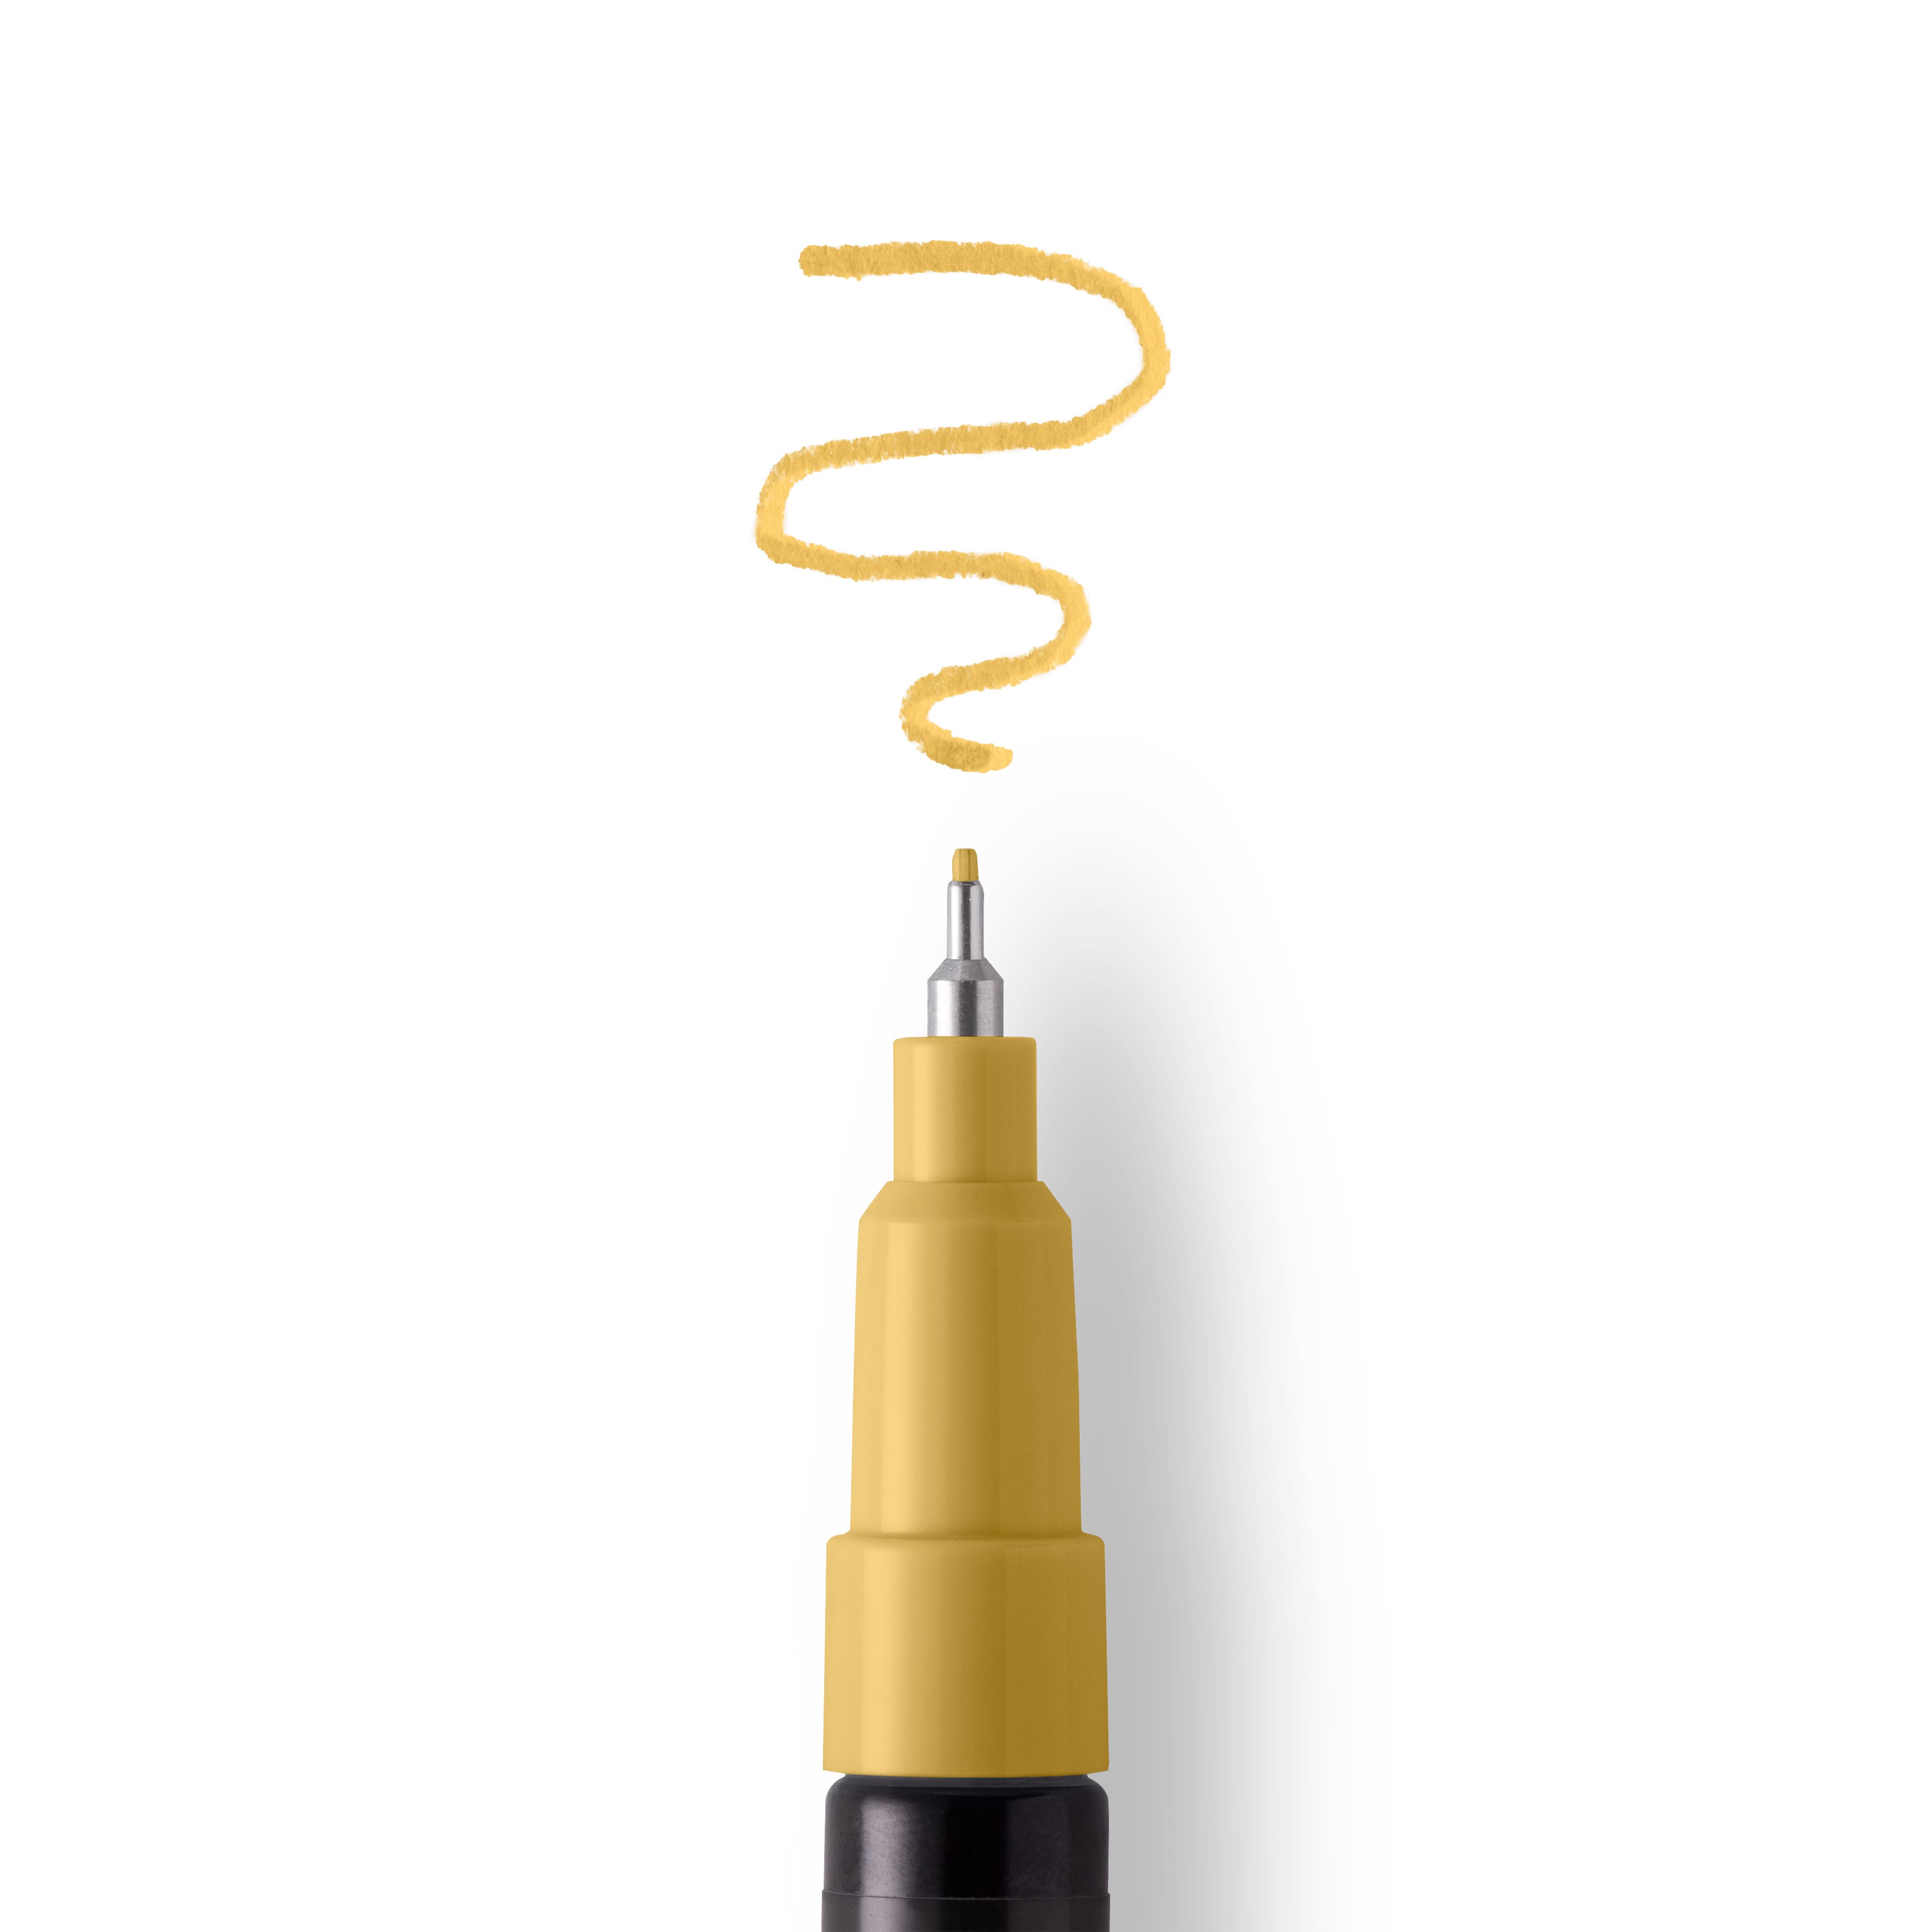 Multi-Surface Fine Tip Premium Paint Pen by Craft Smart®